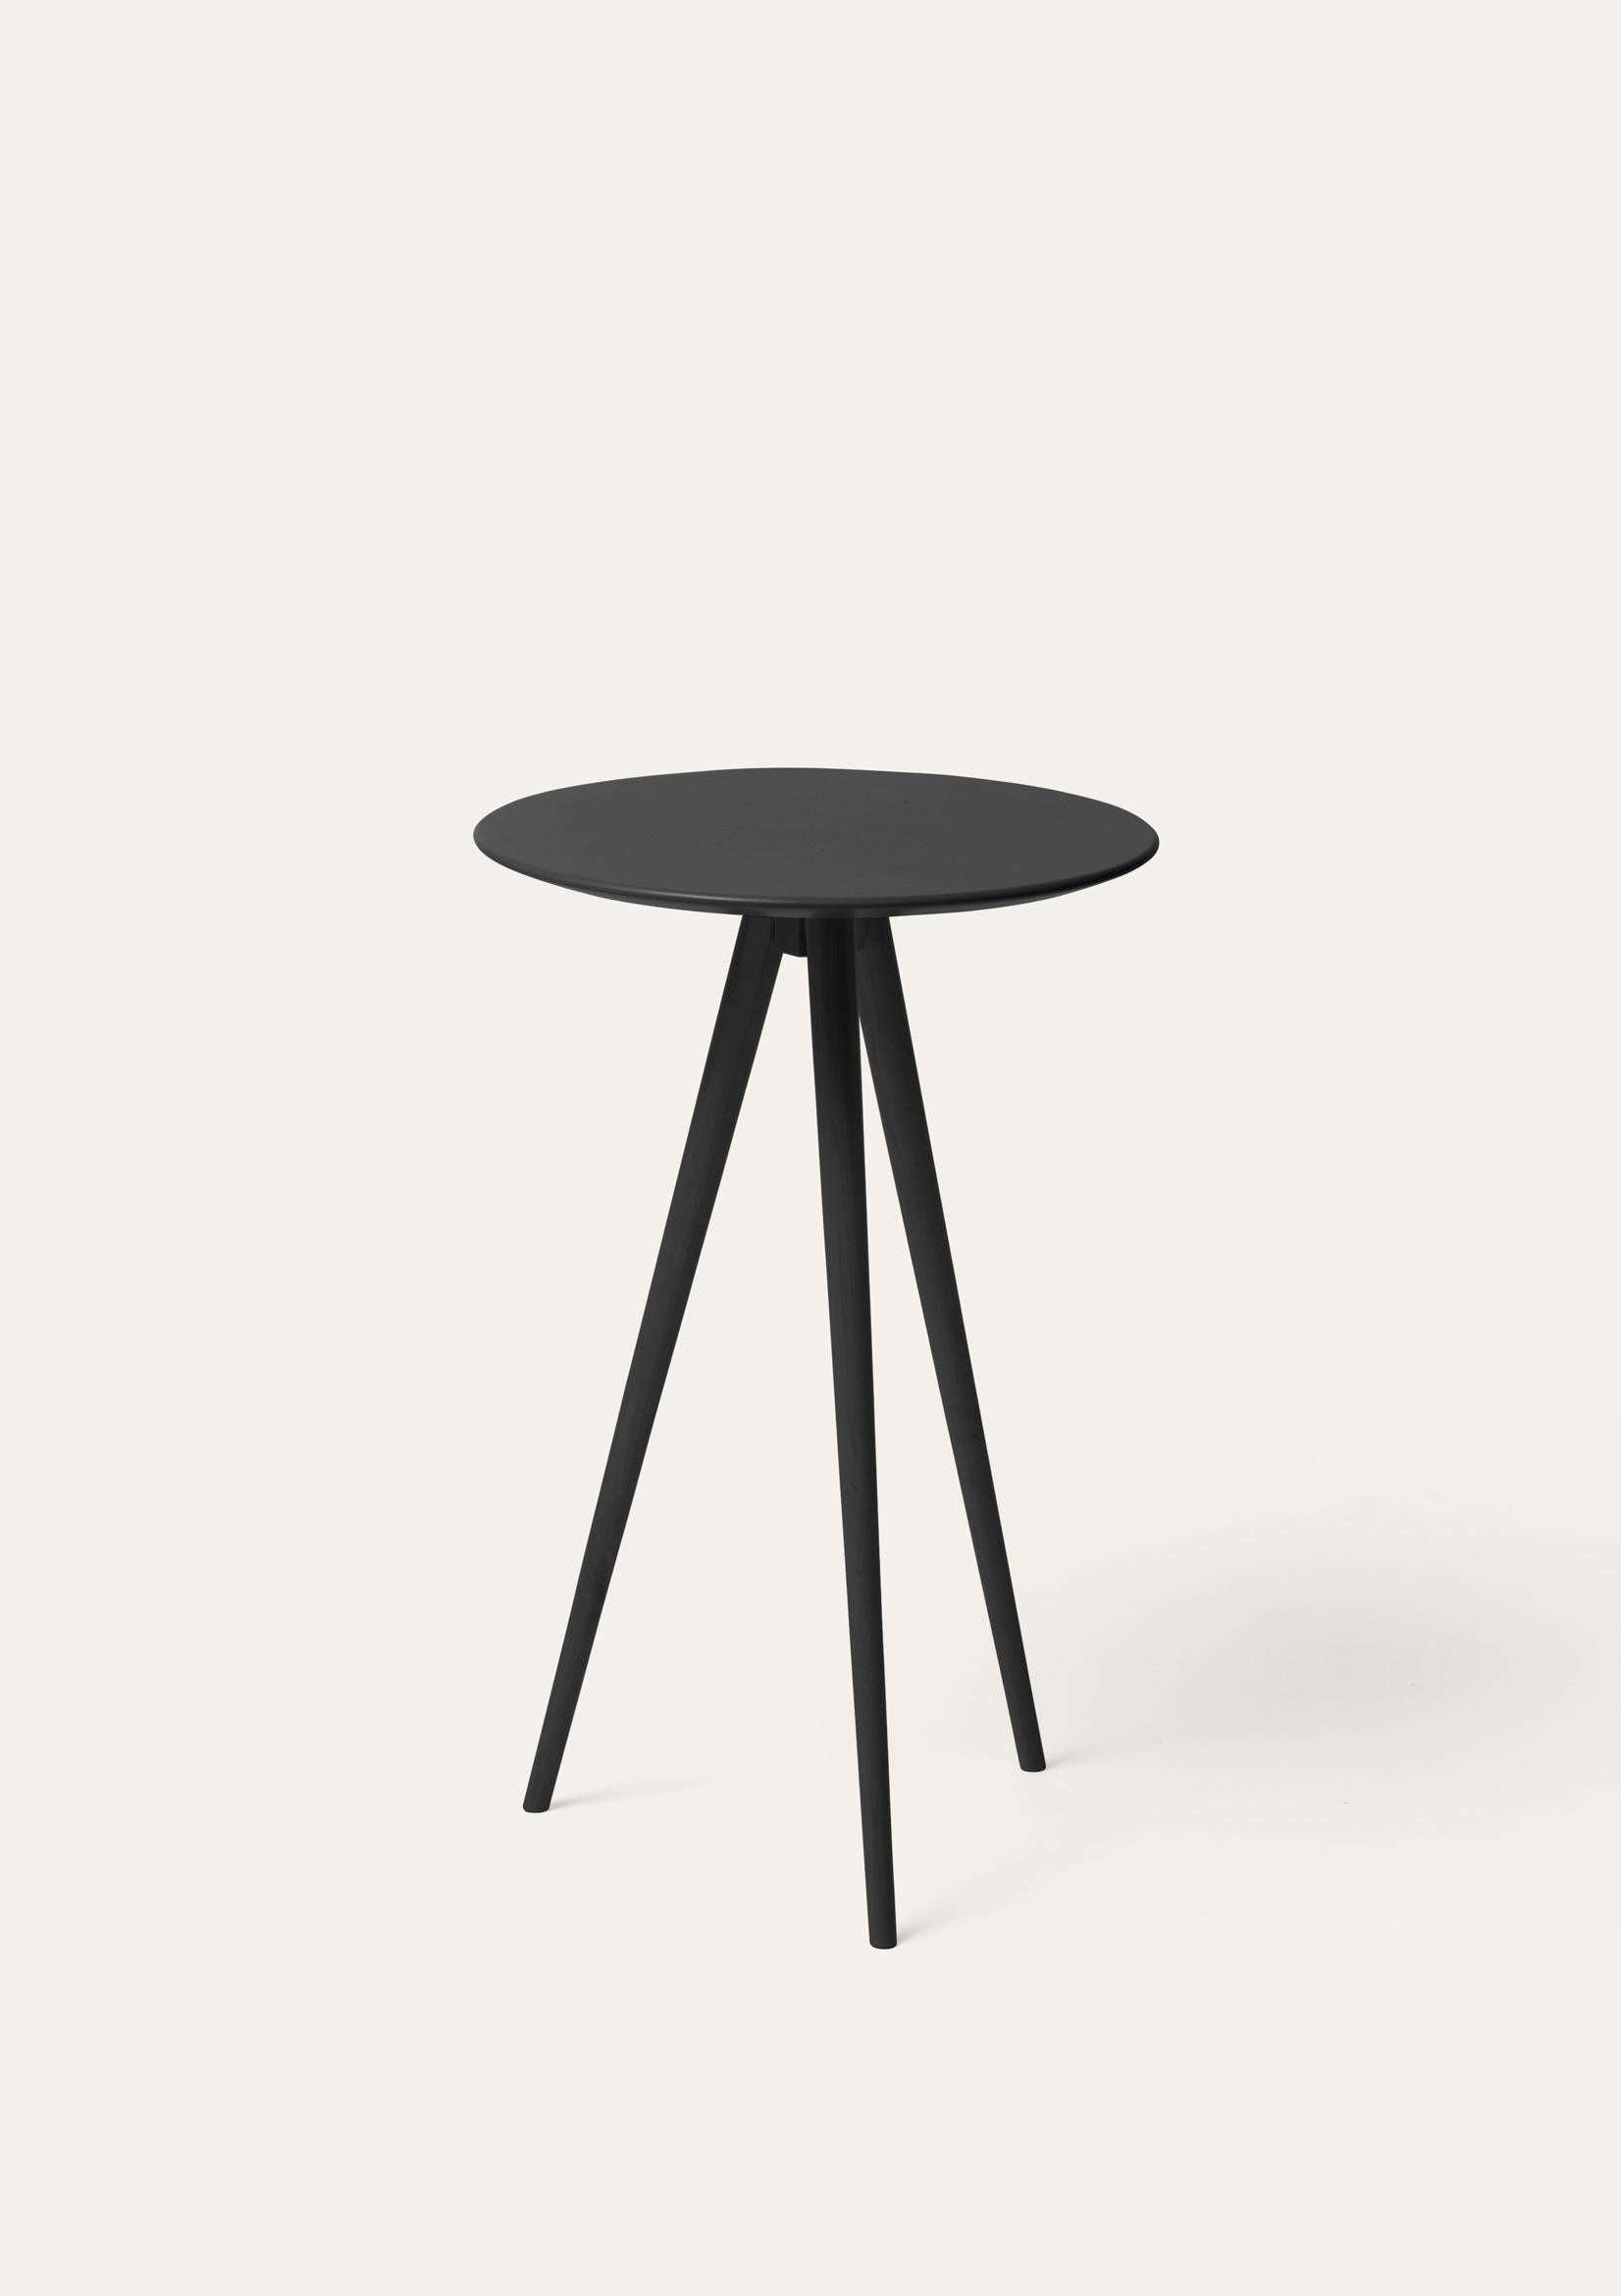 Schwarzer Trip Beistelltisch von Storängen Design
Abmessungen: T 35 x H 62 cm
MATERIAL: Birkenholz.
Auch in anderen Farben erhältlich.

Trip ist unser kleinster Tisch, eine leichte dreibeinige Platte, die vollständig aus Birke gefertigt ist. Ein